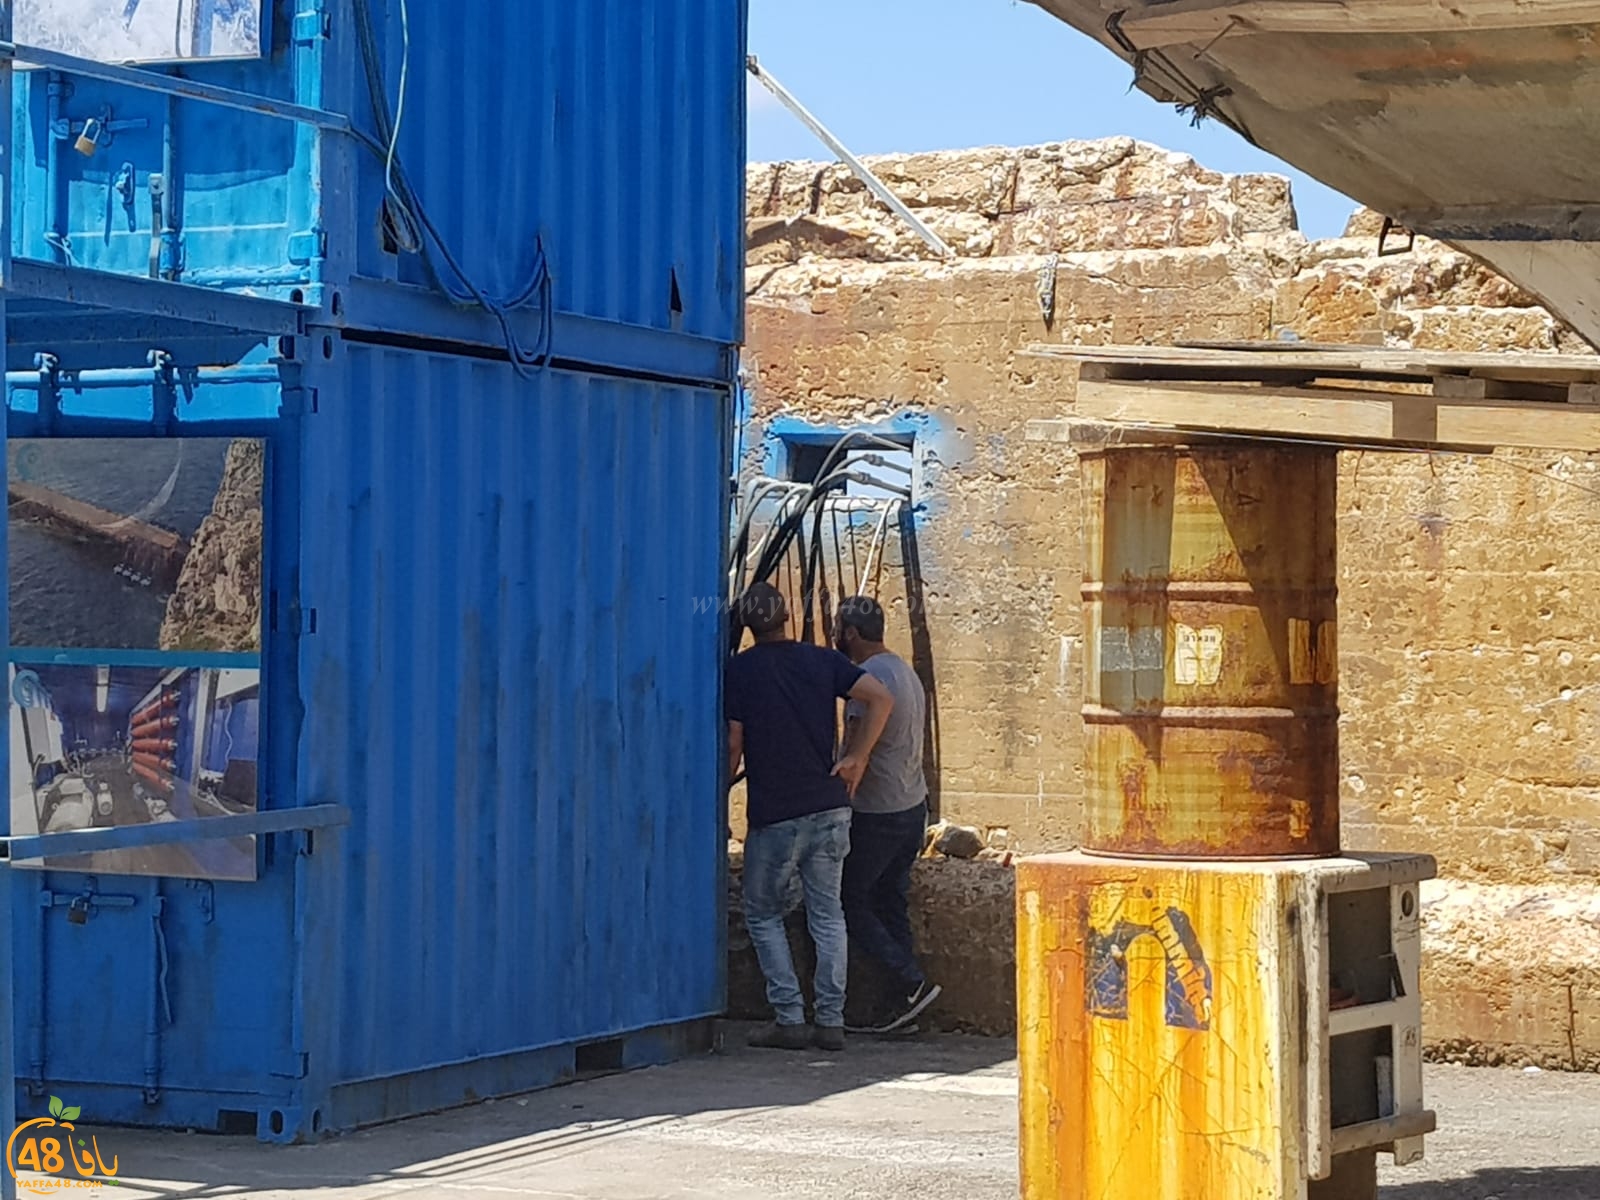 بالصور: للمرة الثالثة خلال اسبوعين - الشرطة تداهم مخازن الصيادين في ميناء يافا 